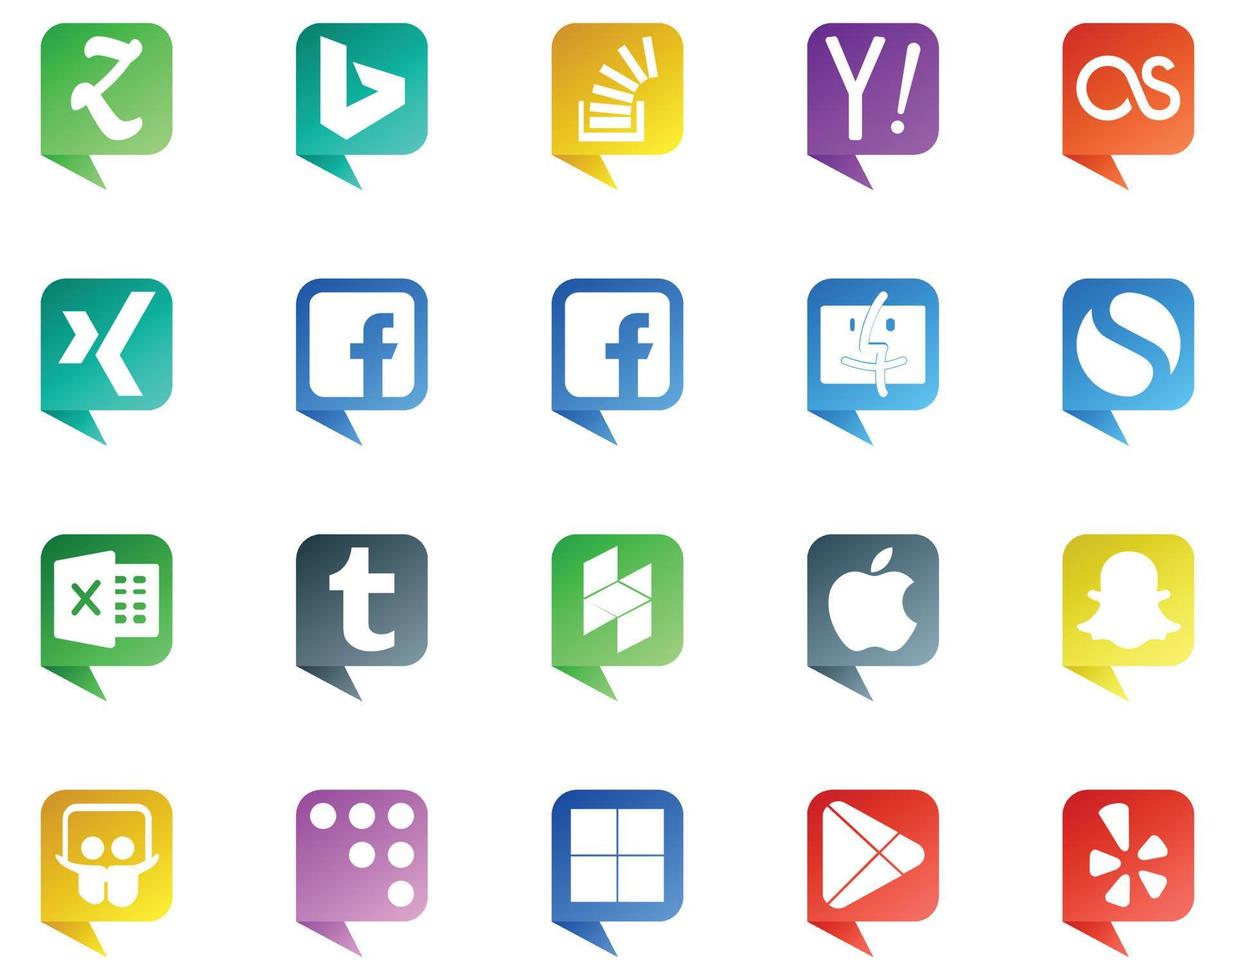 20 logo de style bulle de médias sociaux comme snapchat houzz lastfm tumblr simple vecteur